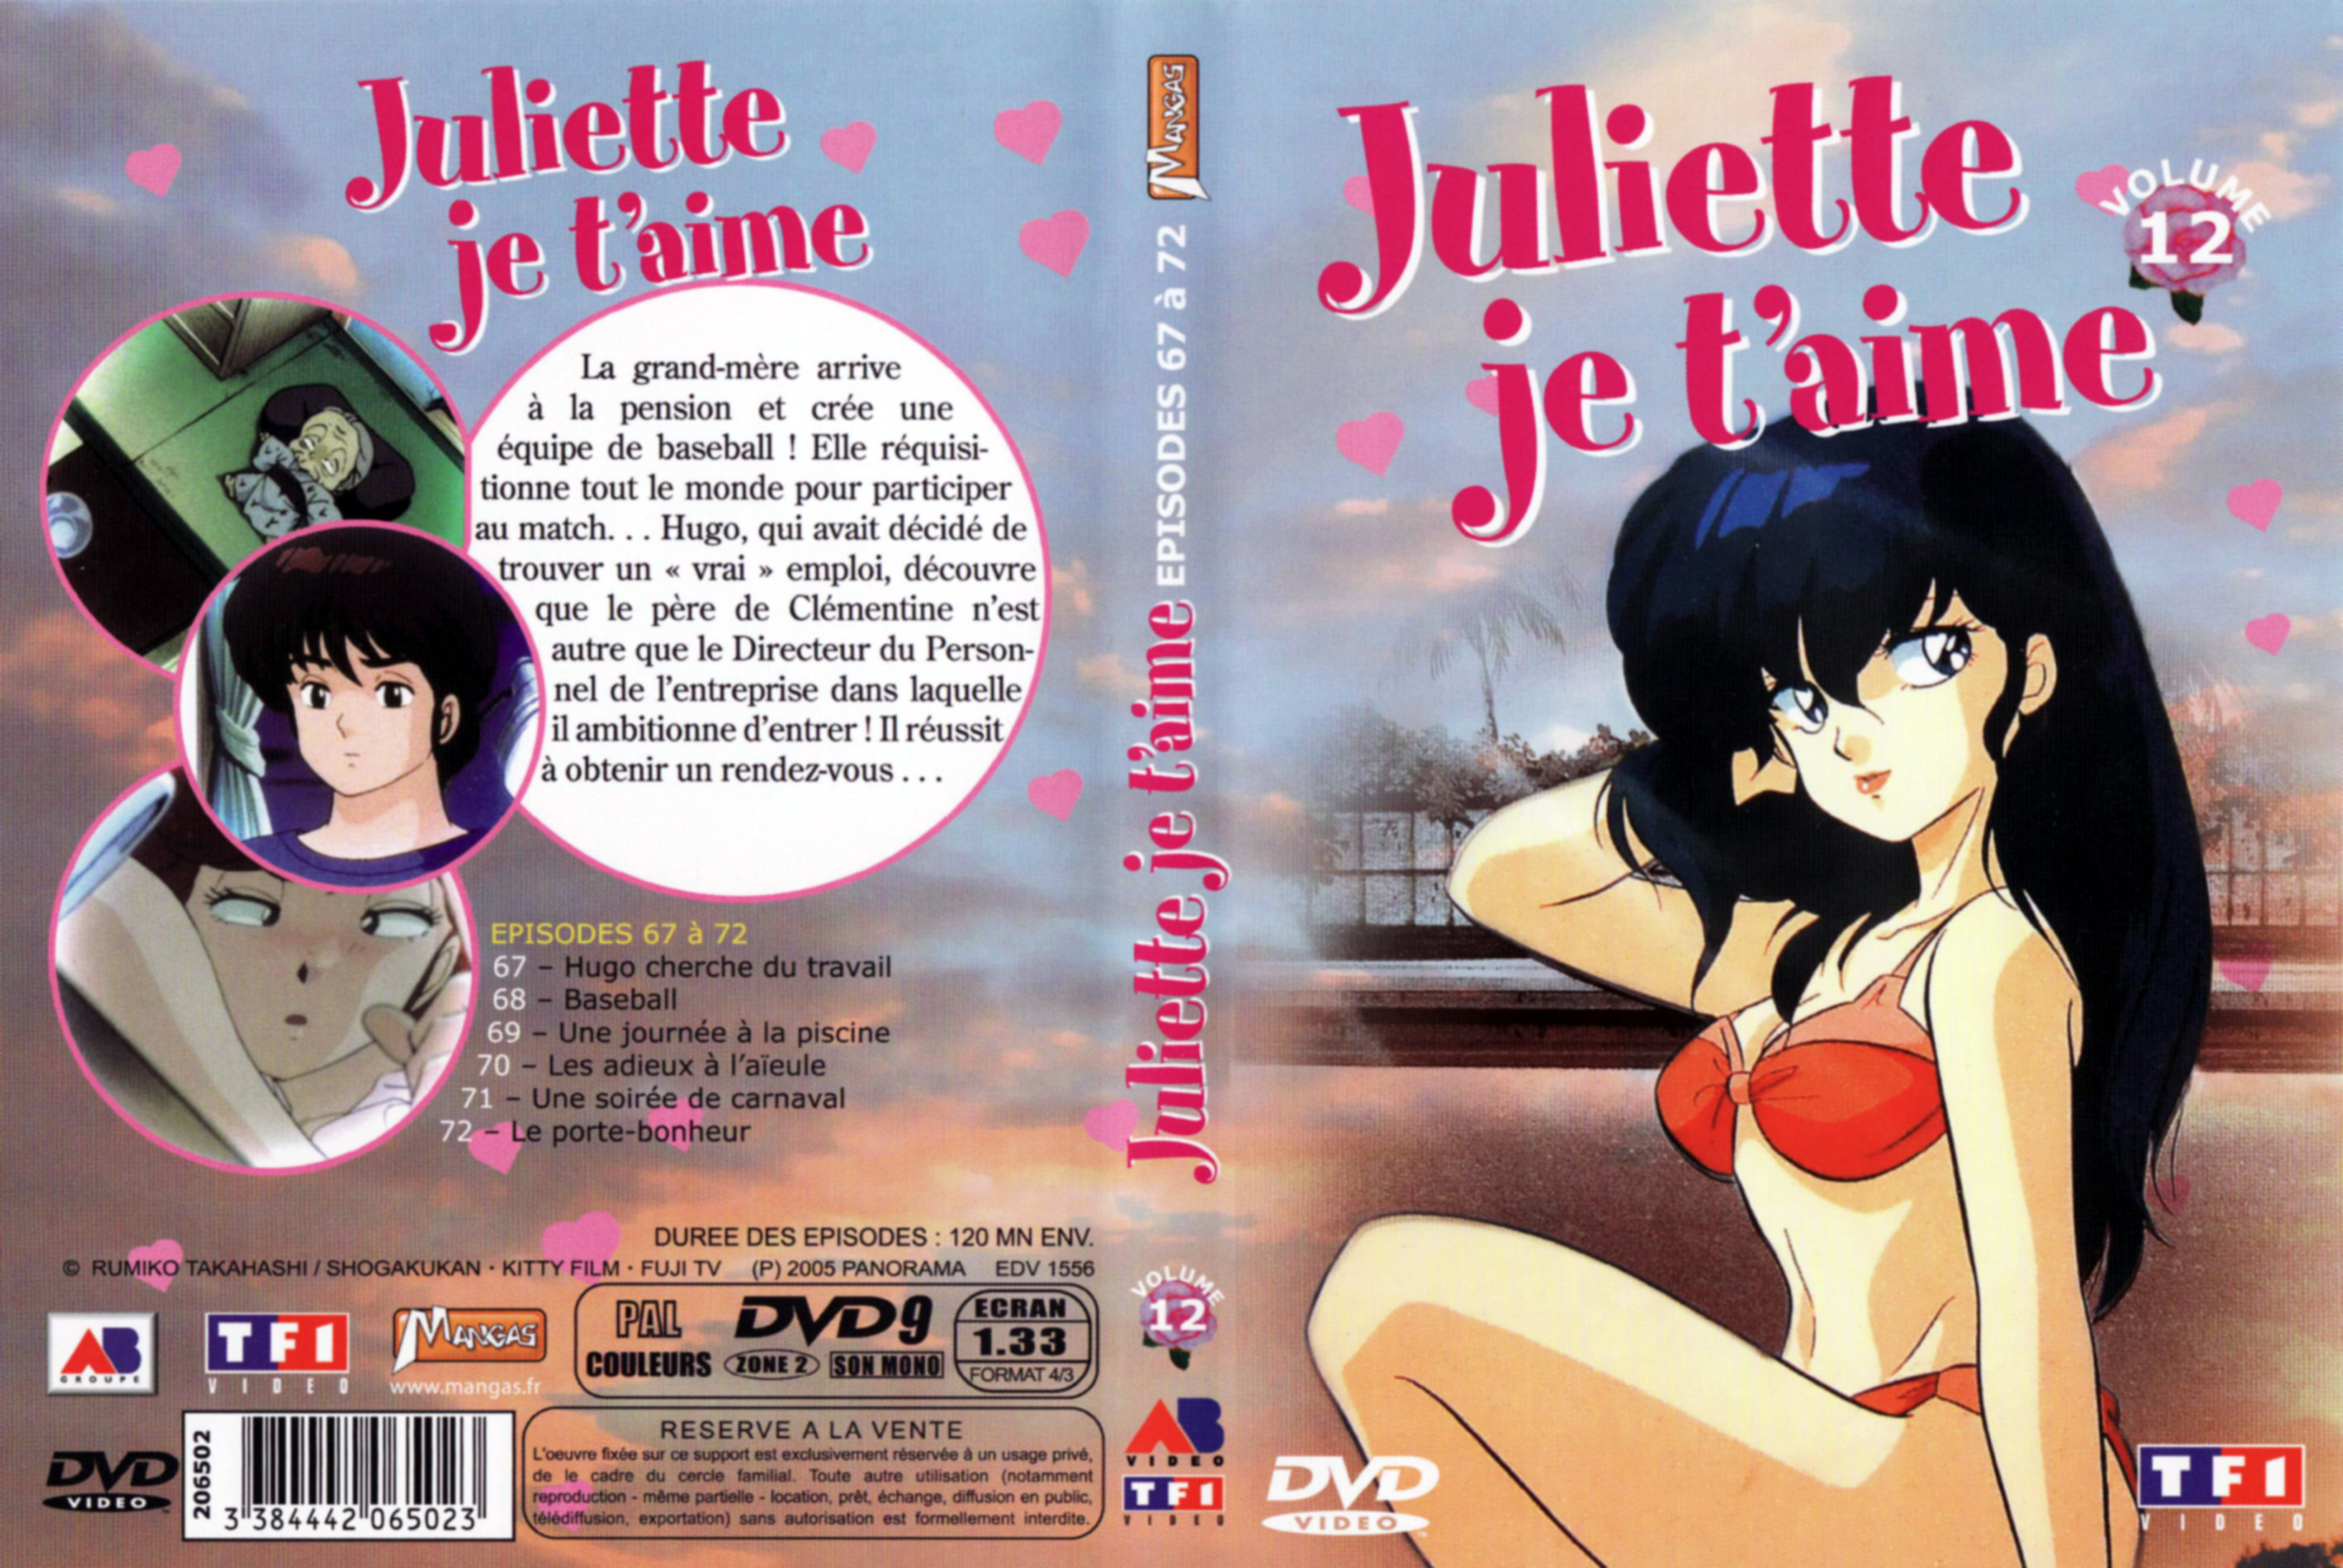 Jaquette DVD Juliette je t aime vol 12